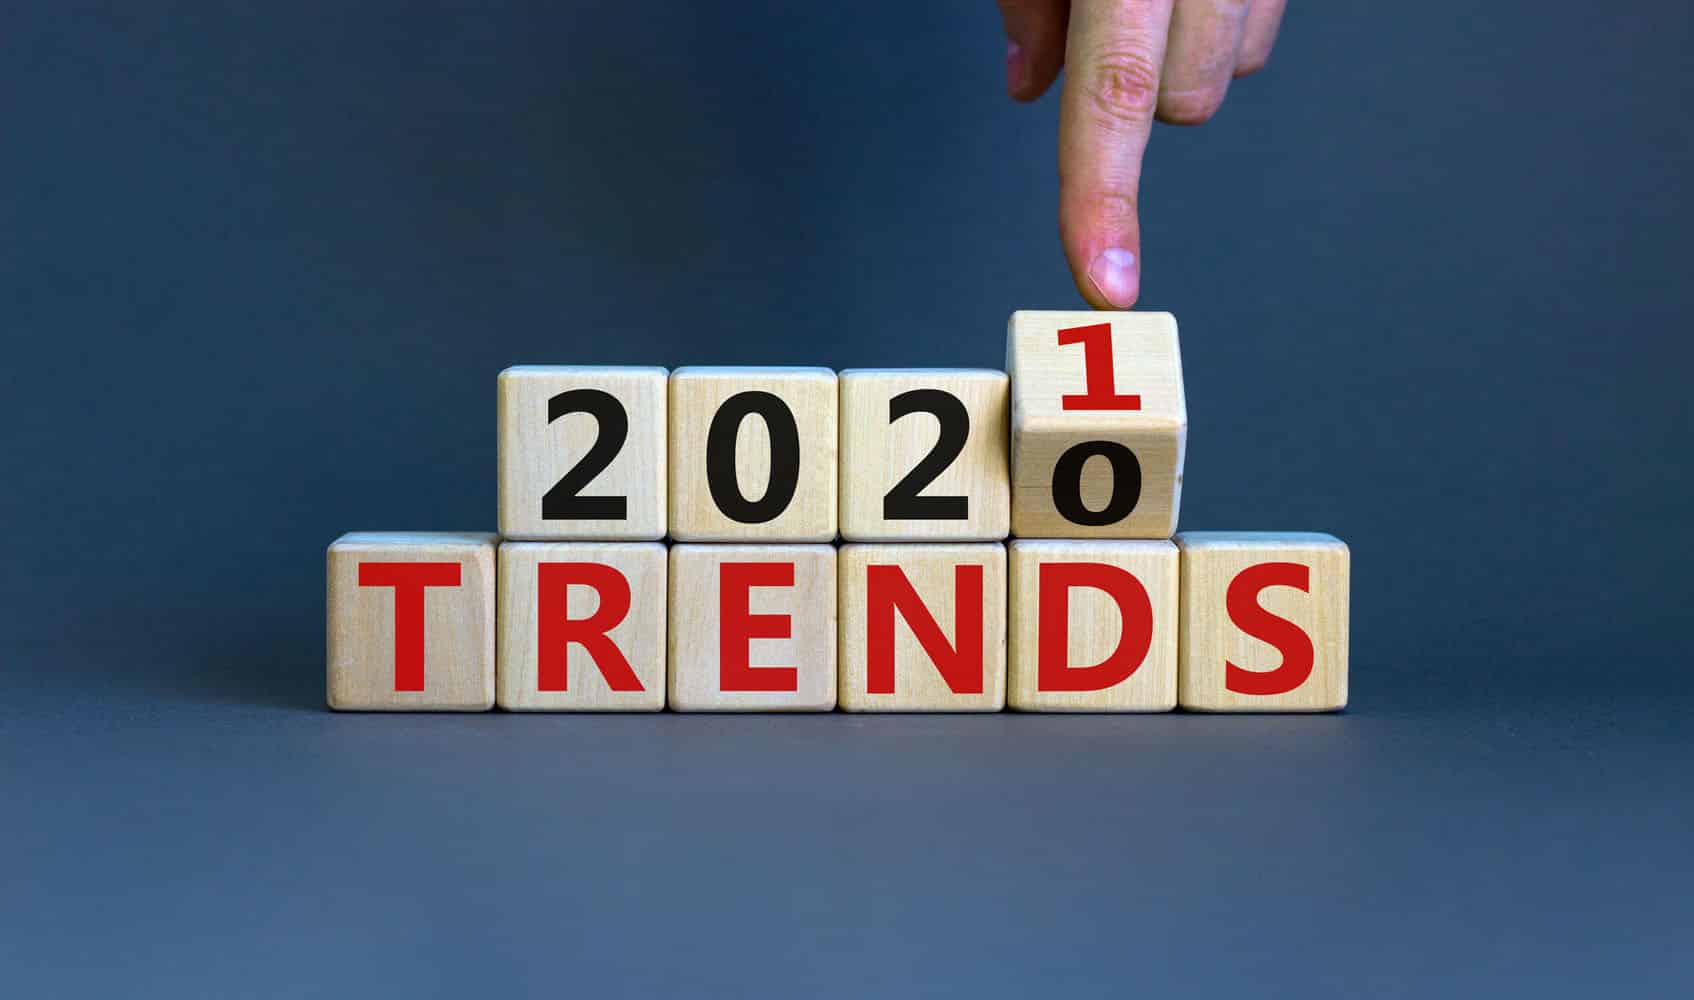 2021 trends